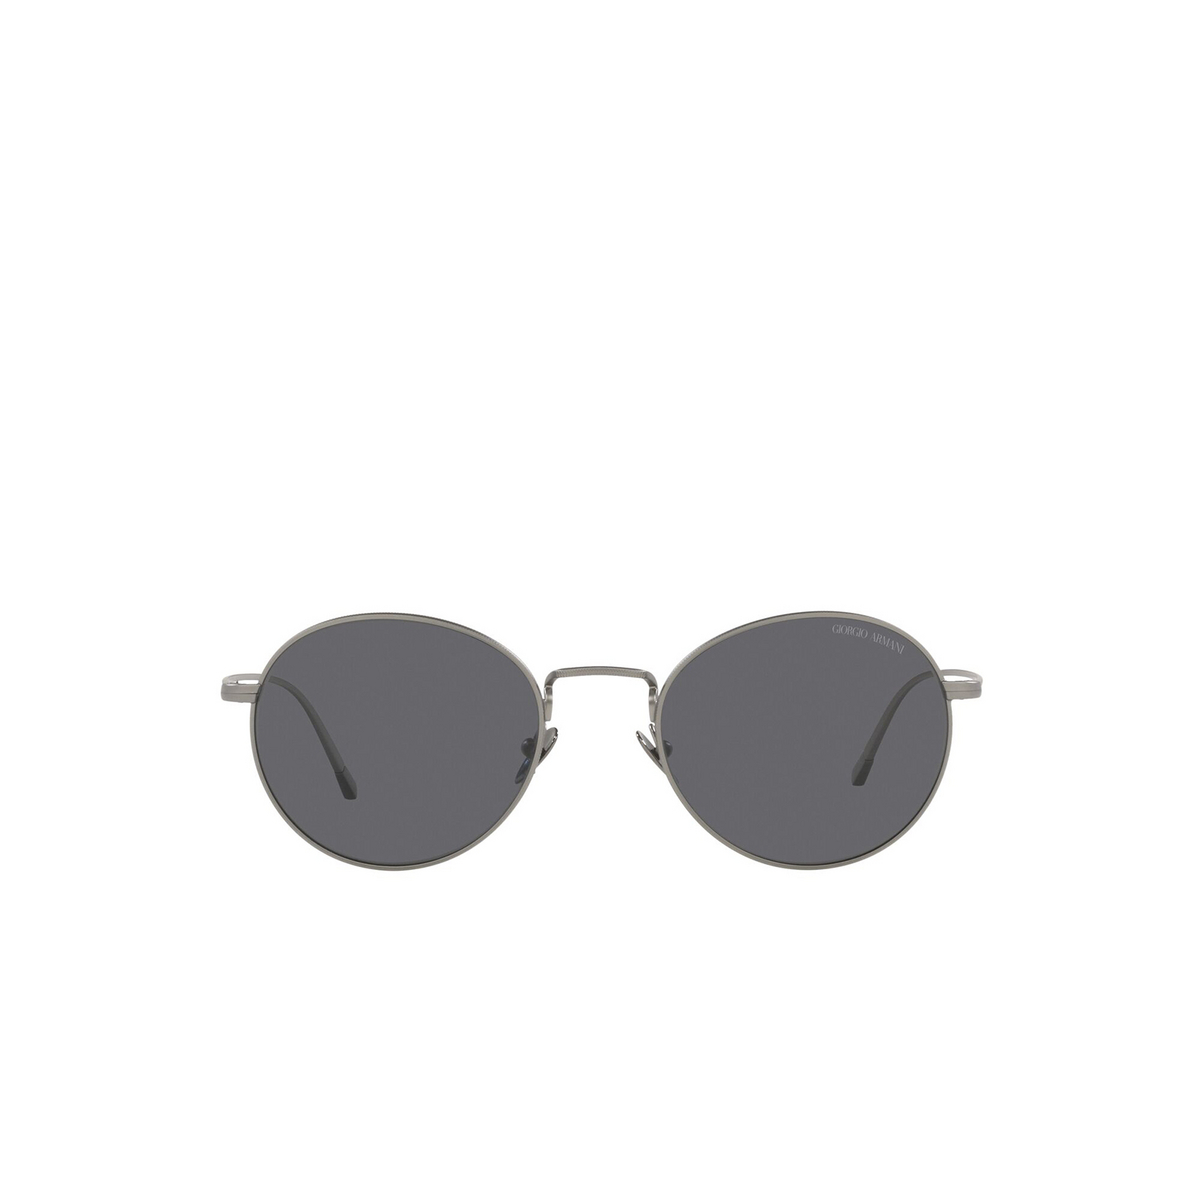 Giorgio Armani® Oval Sunglasses: AR6125 color Matte Gunmetal 300381 - front view.